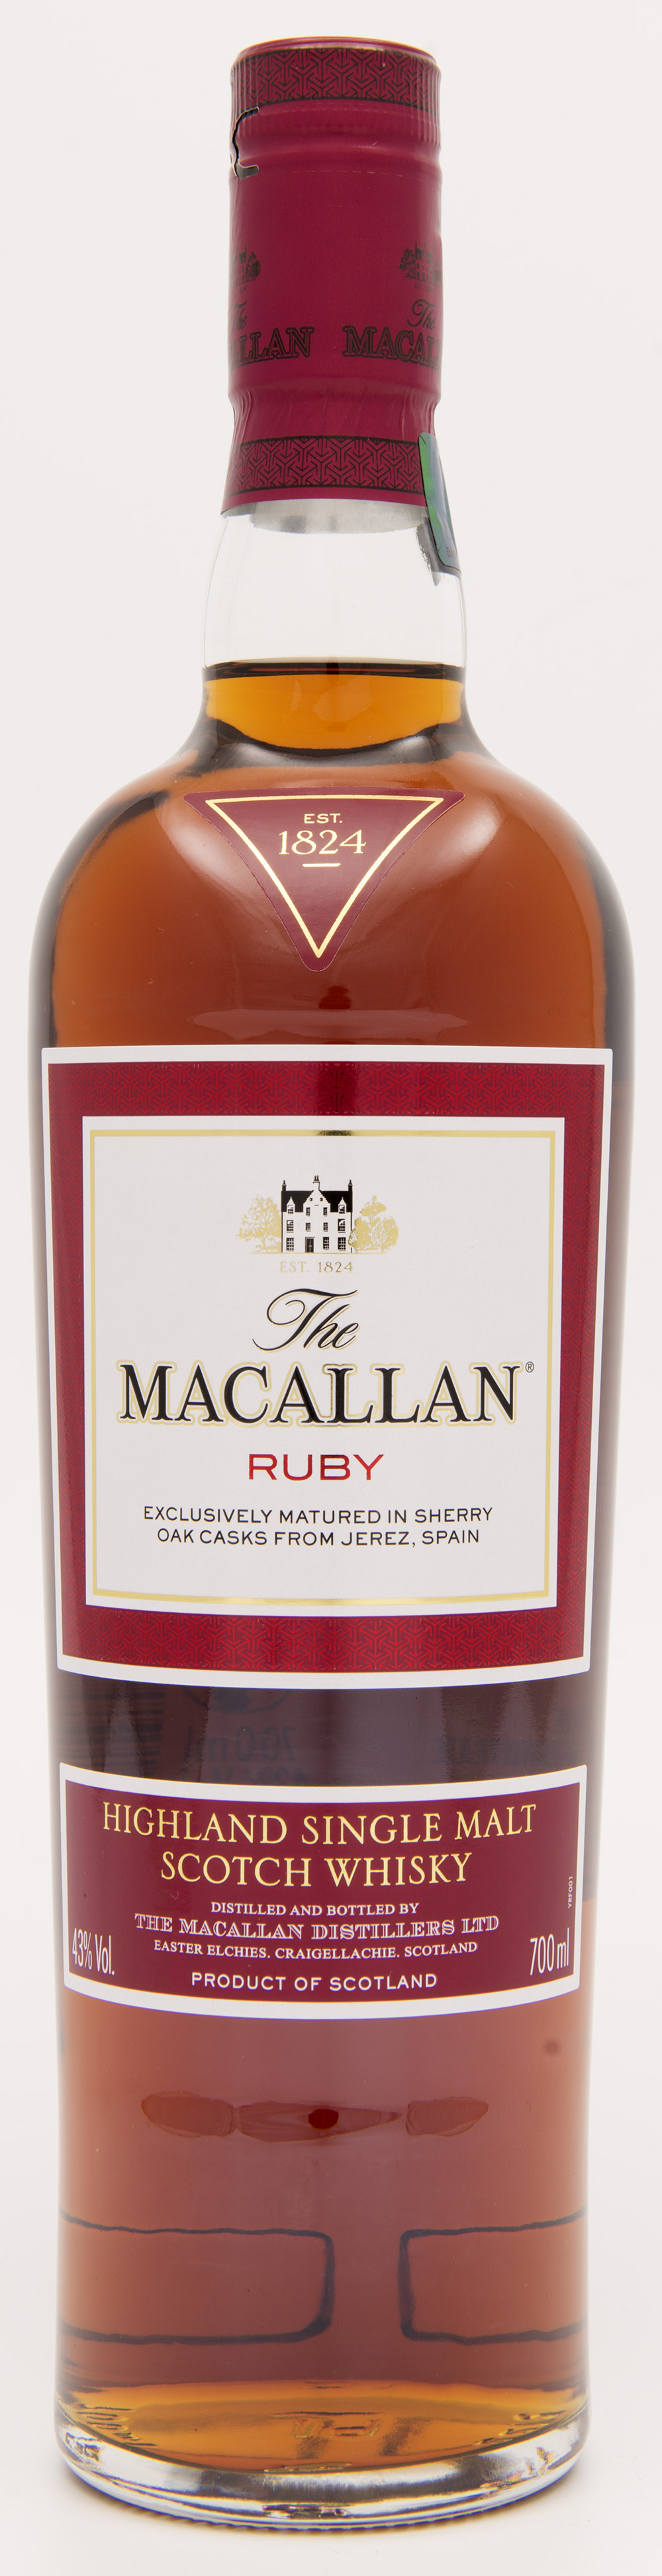 Billede: DSC_3592 The MacAllan Ruby - bottle.jpg